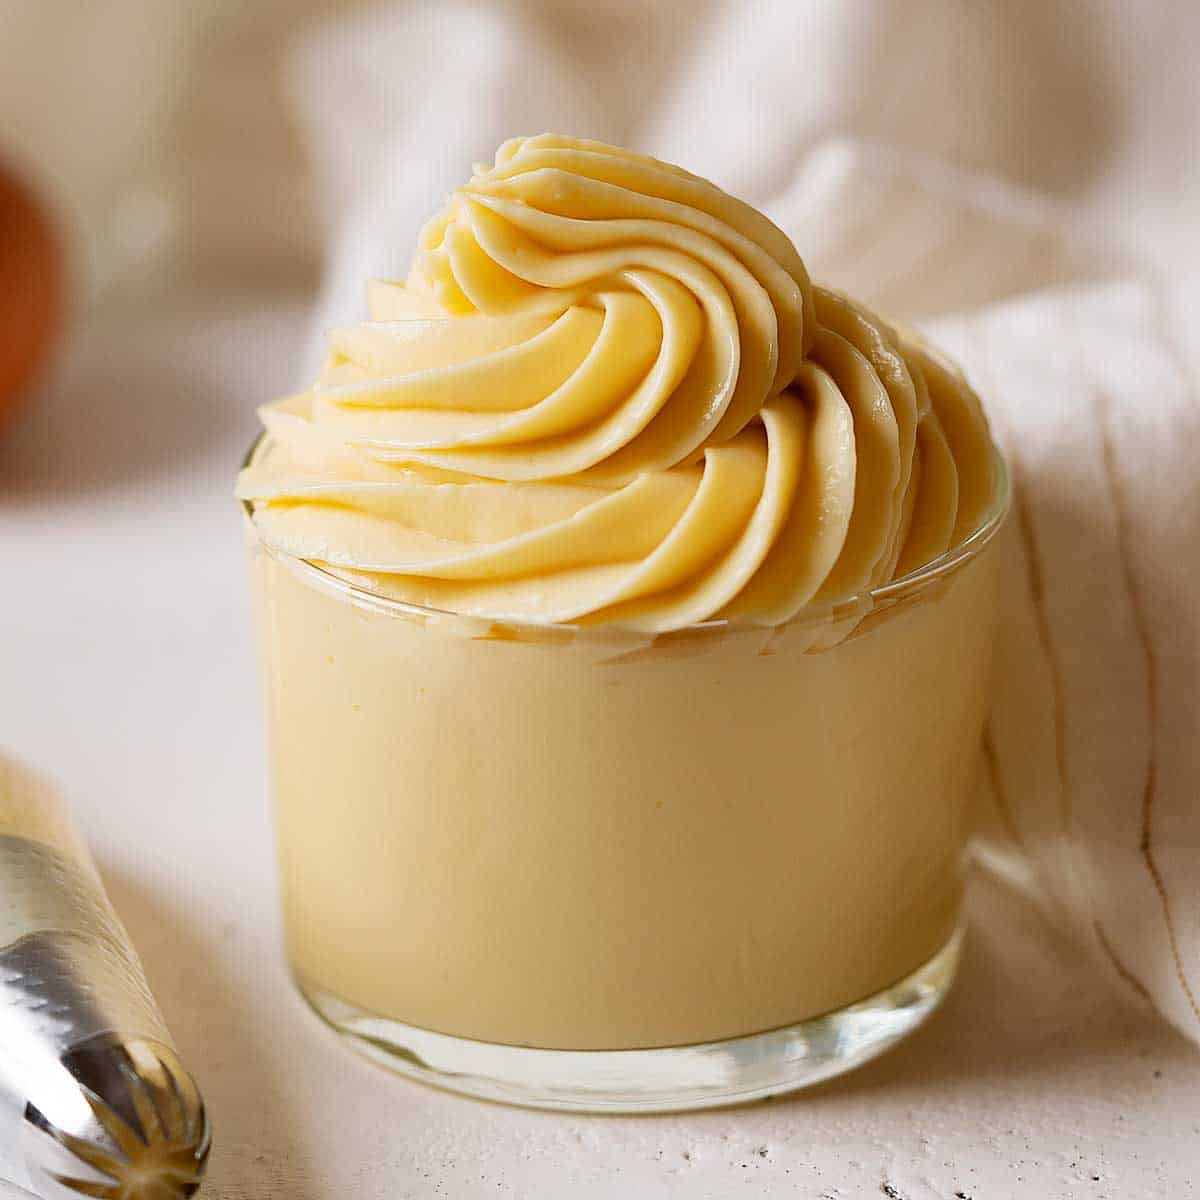 Crema Pastelera Más Saludable - El Mundo Eats